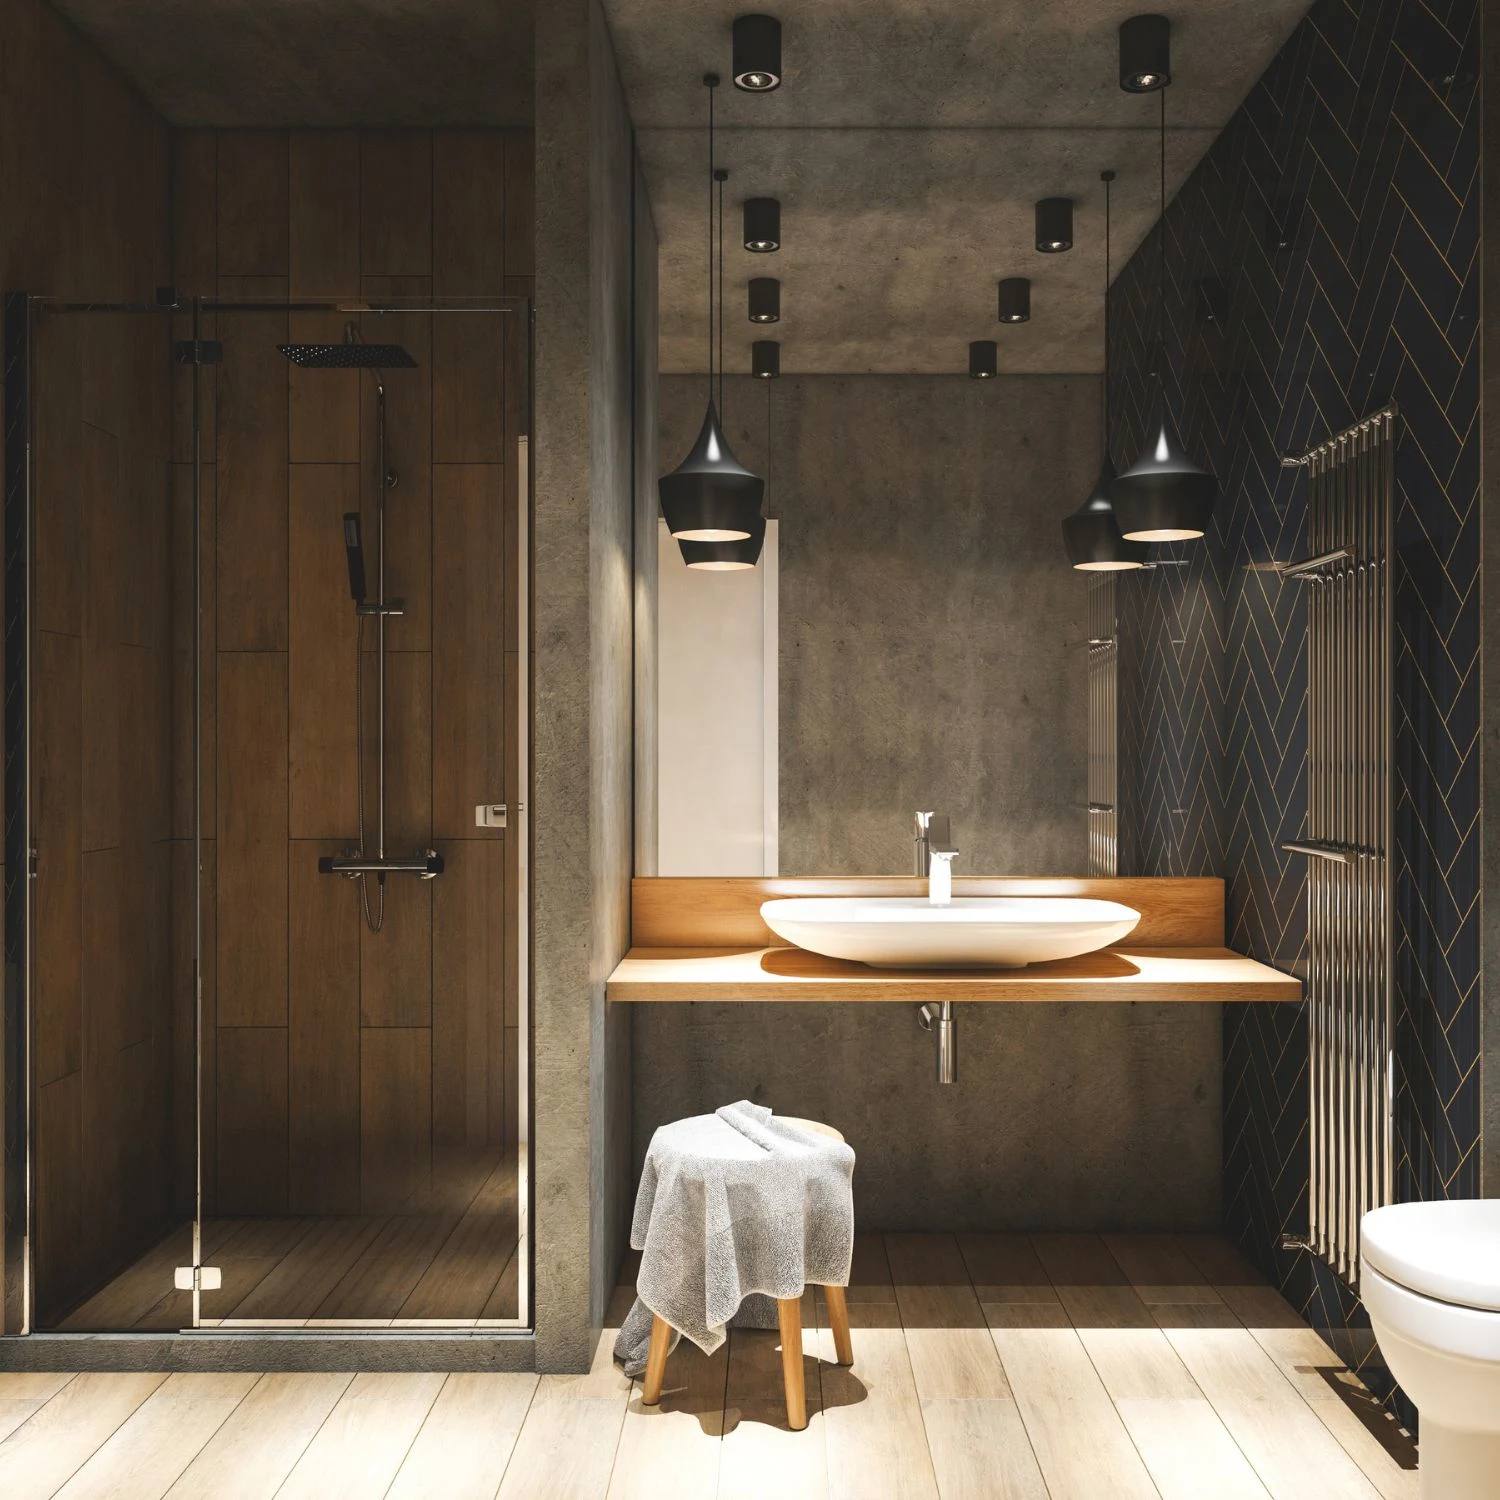 Stilvoll eingerichtetes Badezimmer in Holzoptik